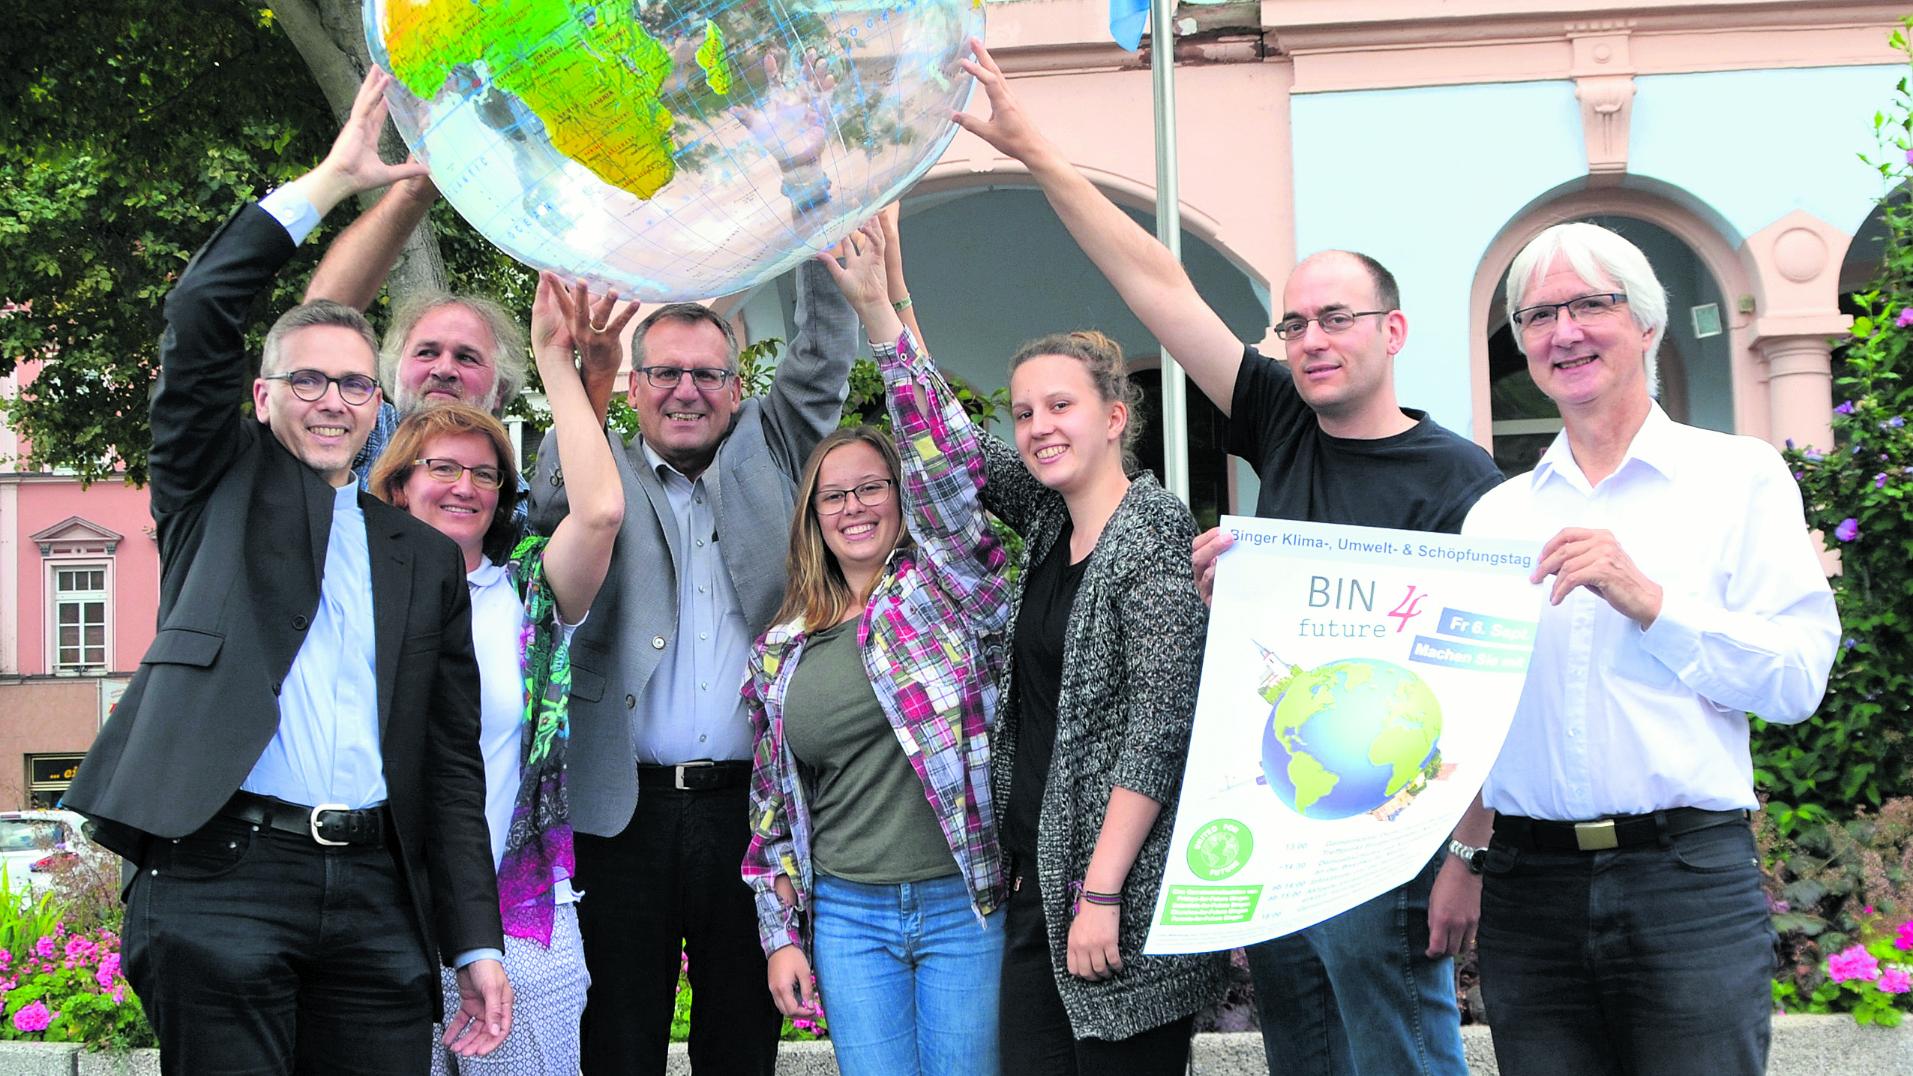 Die Organisatoren des ersten Binger Klima-, Umwelt- & Schöpfungstags, darunter Pfarrer Markus Lerchl (c) Stadt Bingen